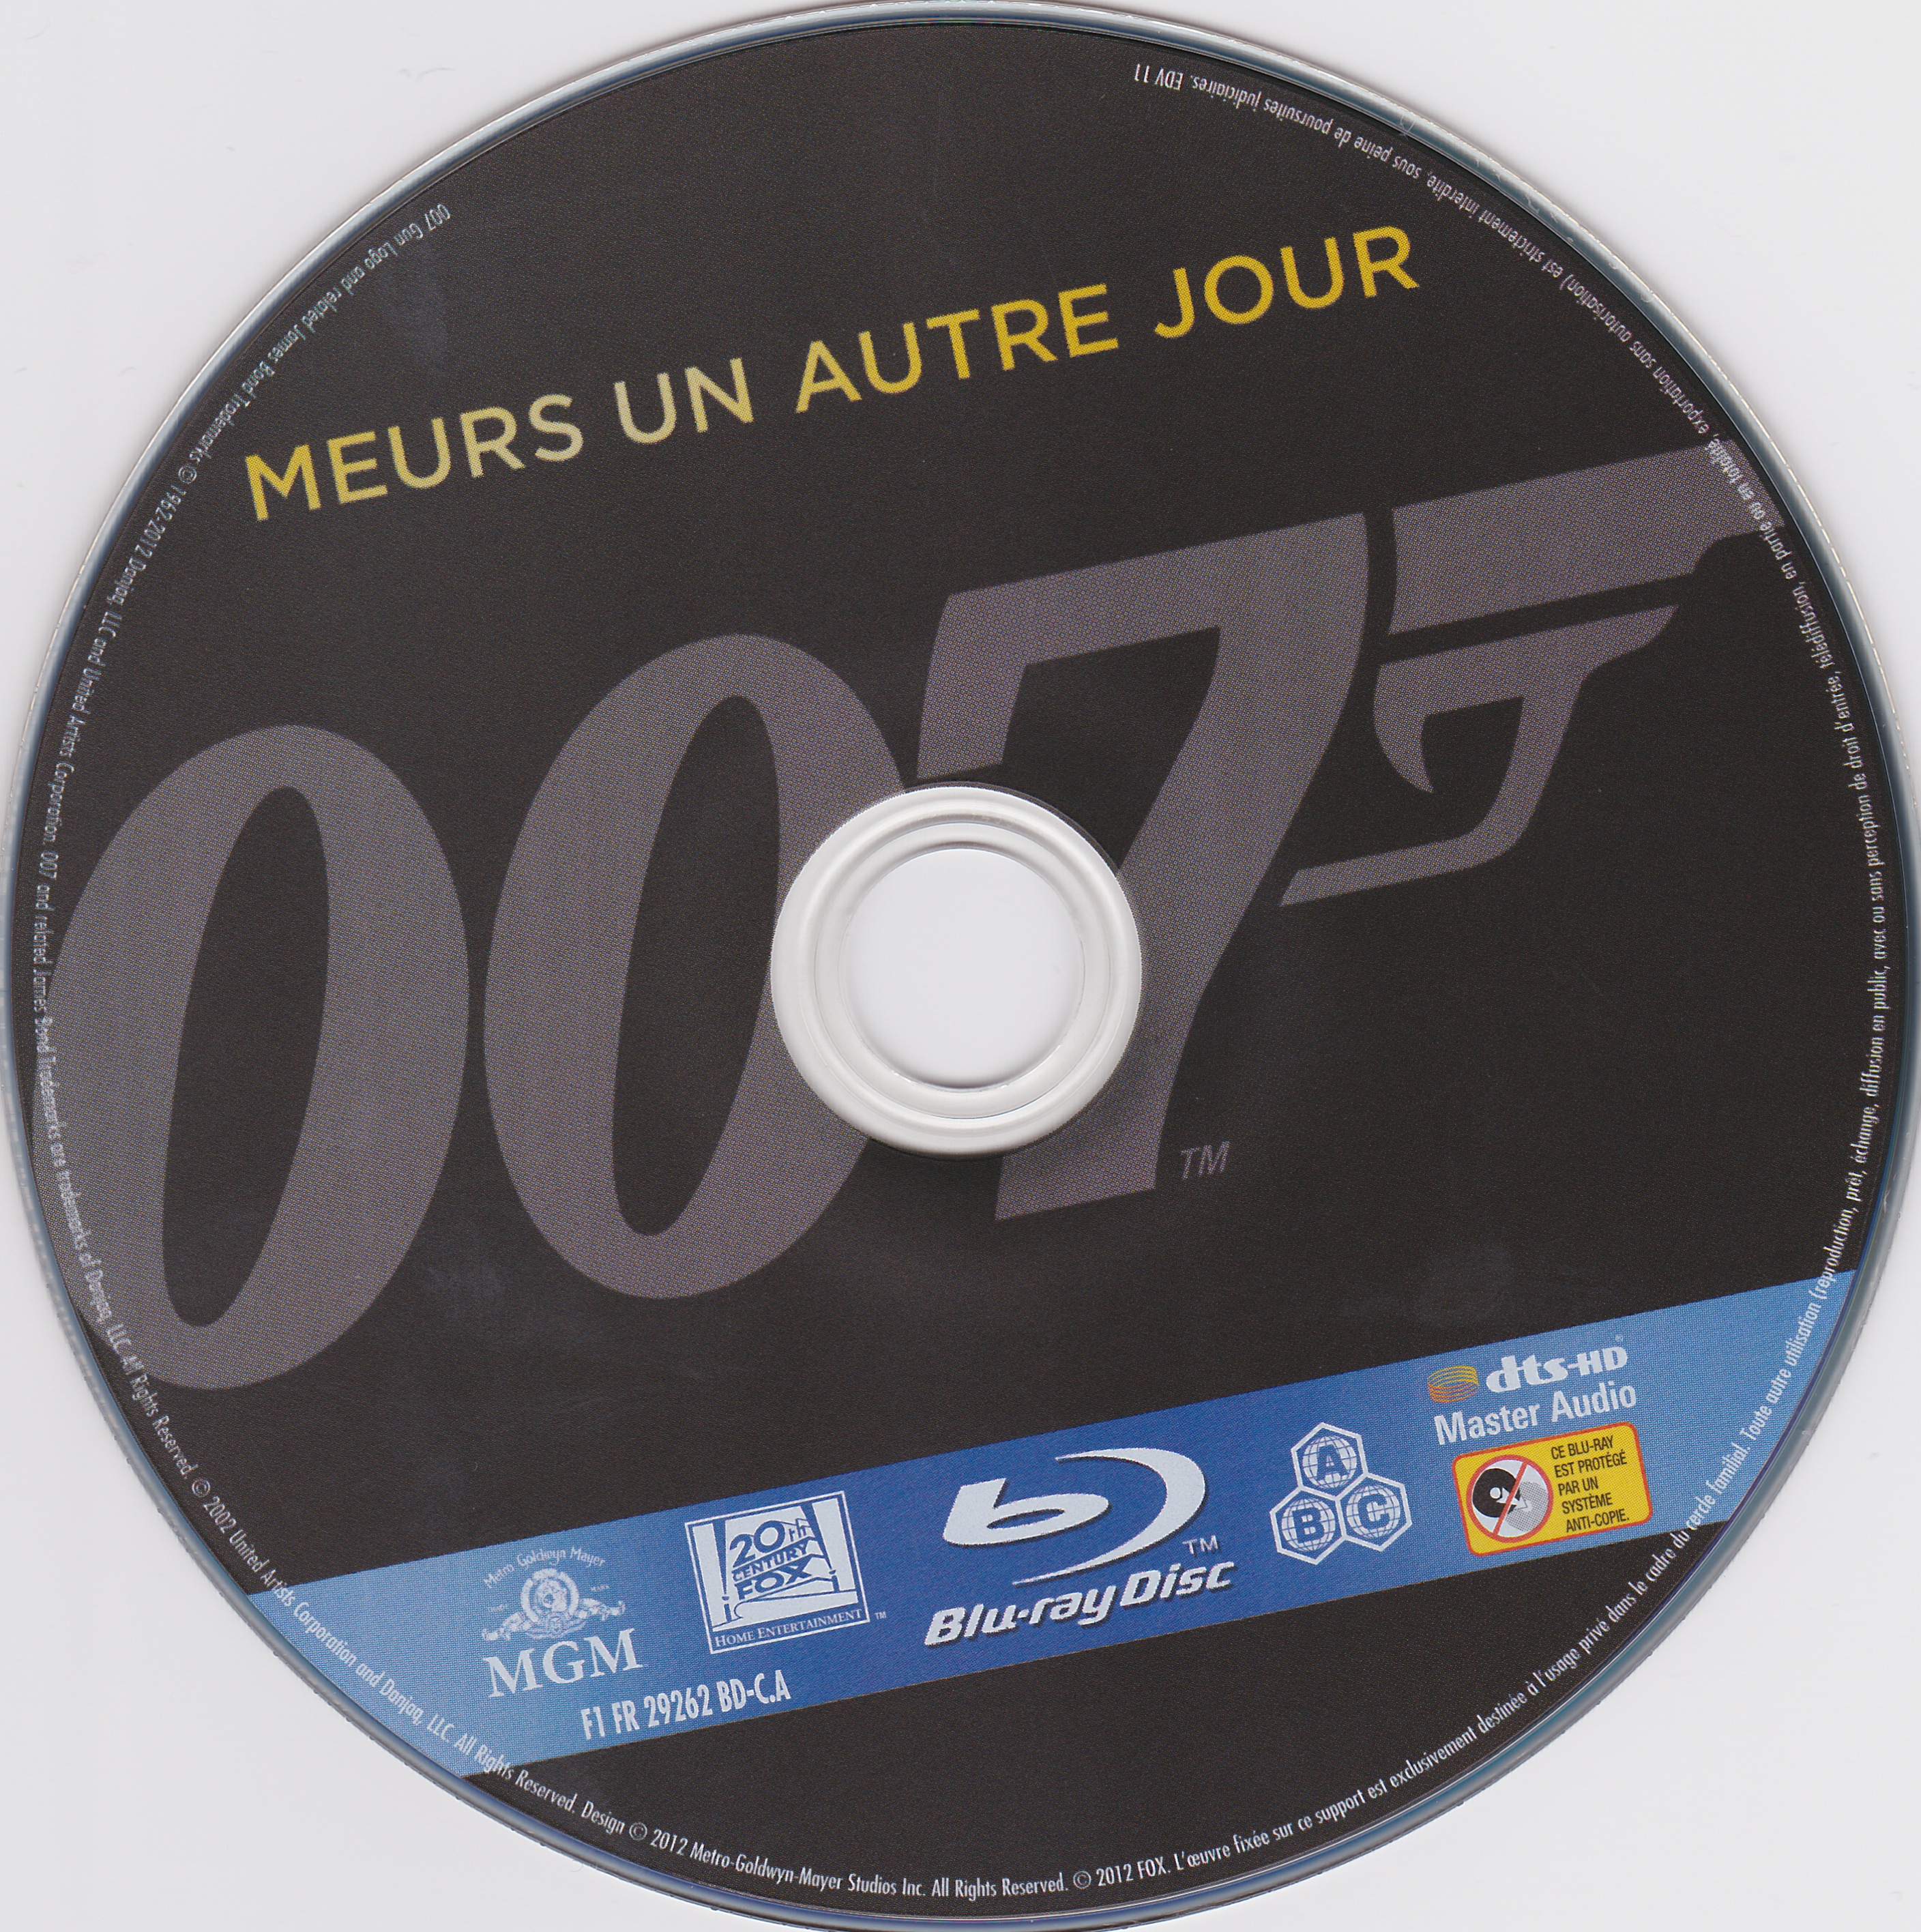 James Bond 007 Meurs un autre jour (BLU-RAY)